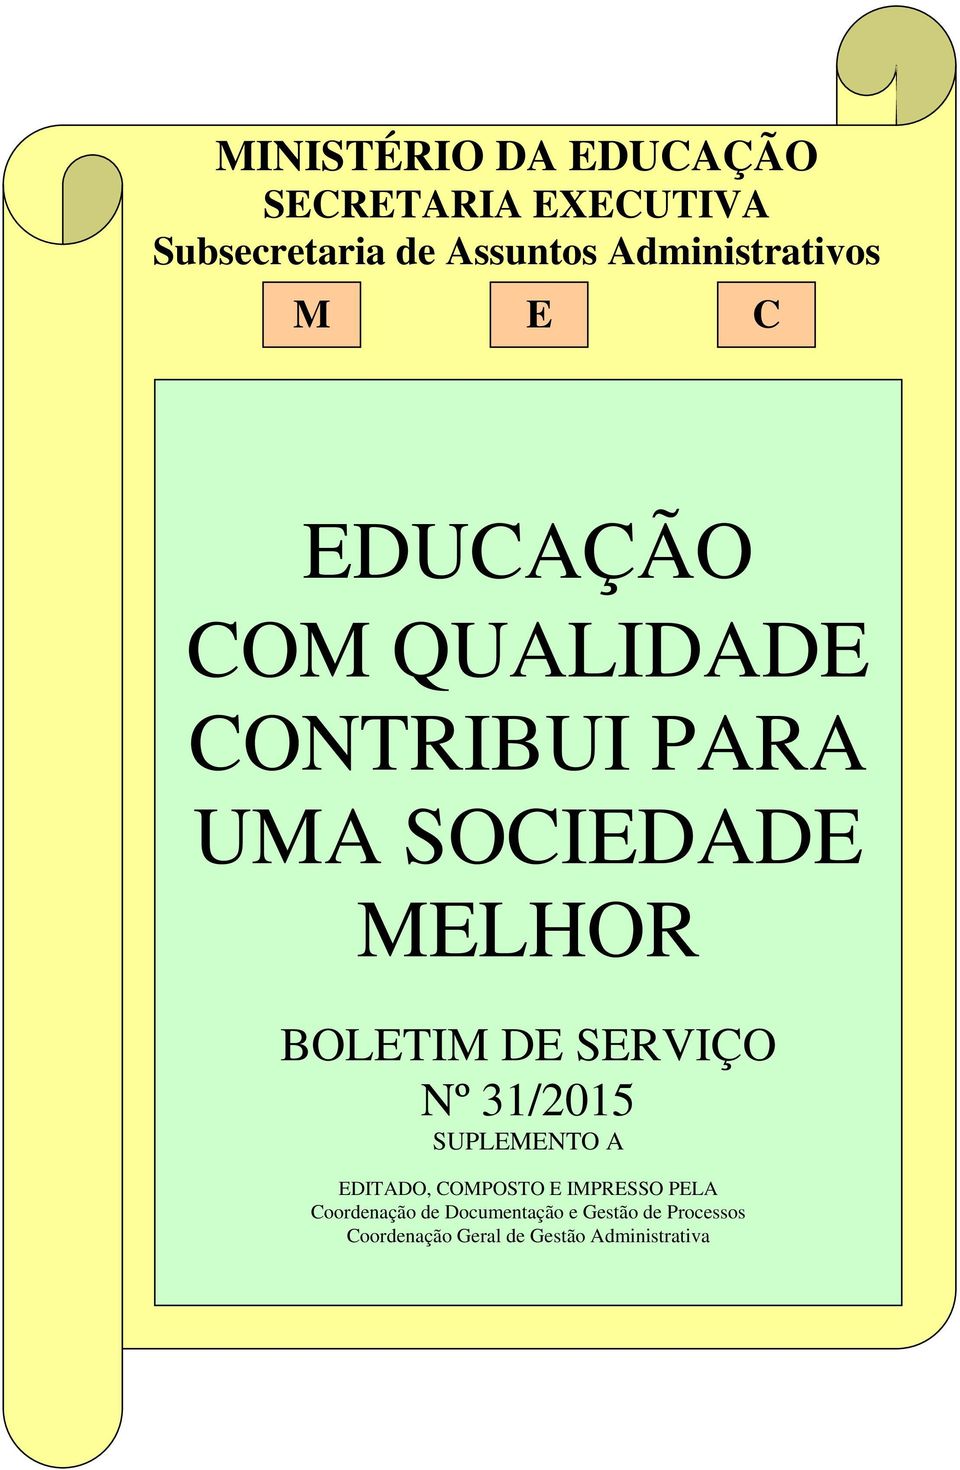 MELHOR BOLETIM DE SERVIÇO Nº 31/2015 SUPLEMENTO A EDITADO, COMPOSTO E IMPRESSO